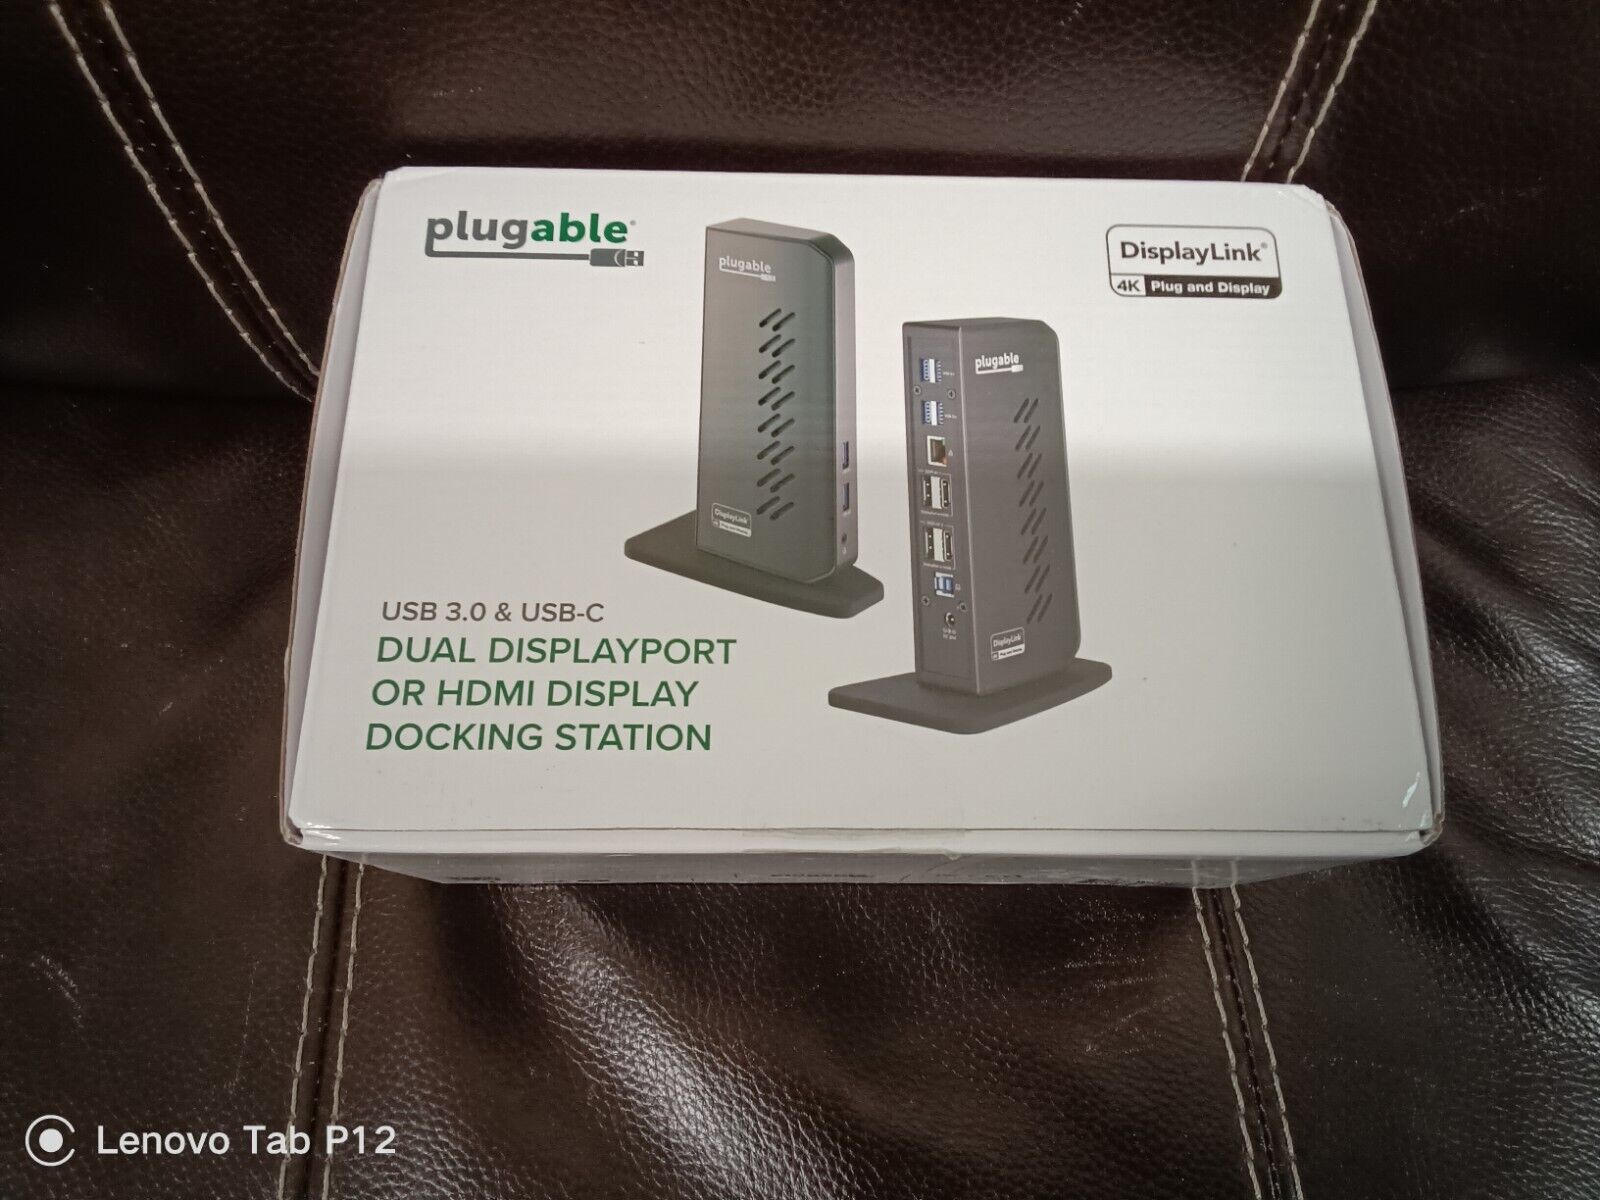 Plugable USB 3.1 Gen 1 Dual 4K Docking Station - Black (UD-6950Z)